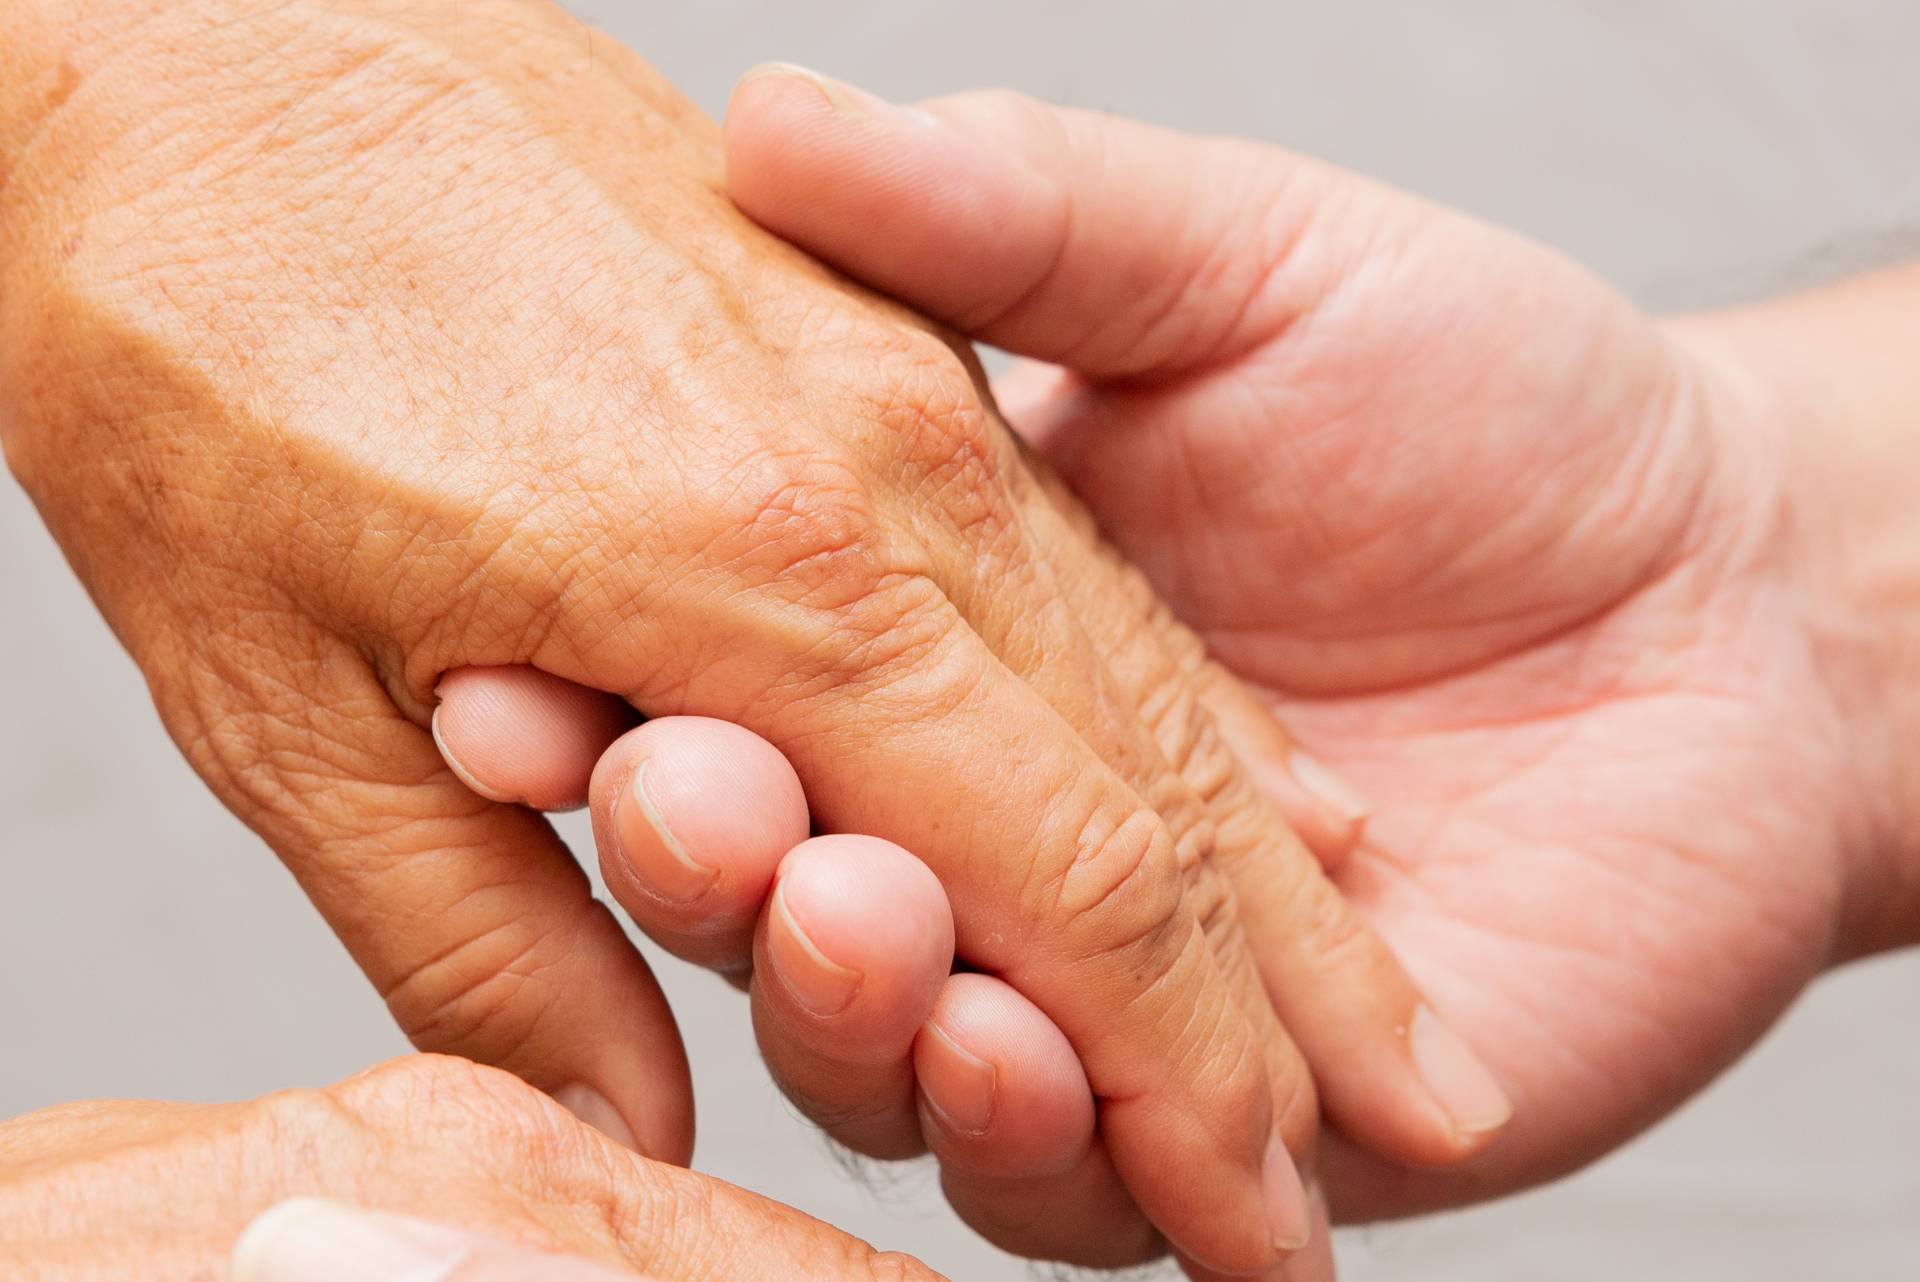 palliative care; caring hands